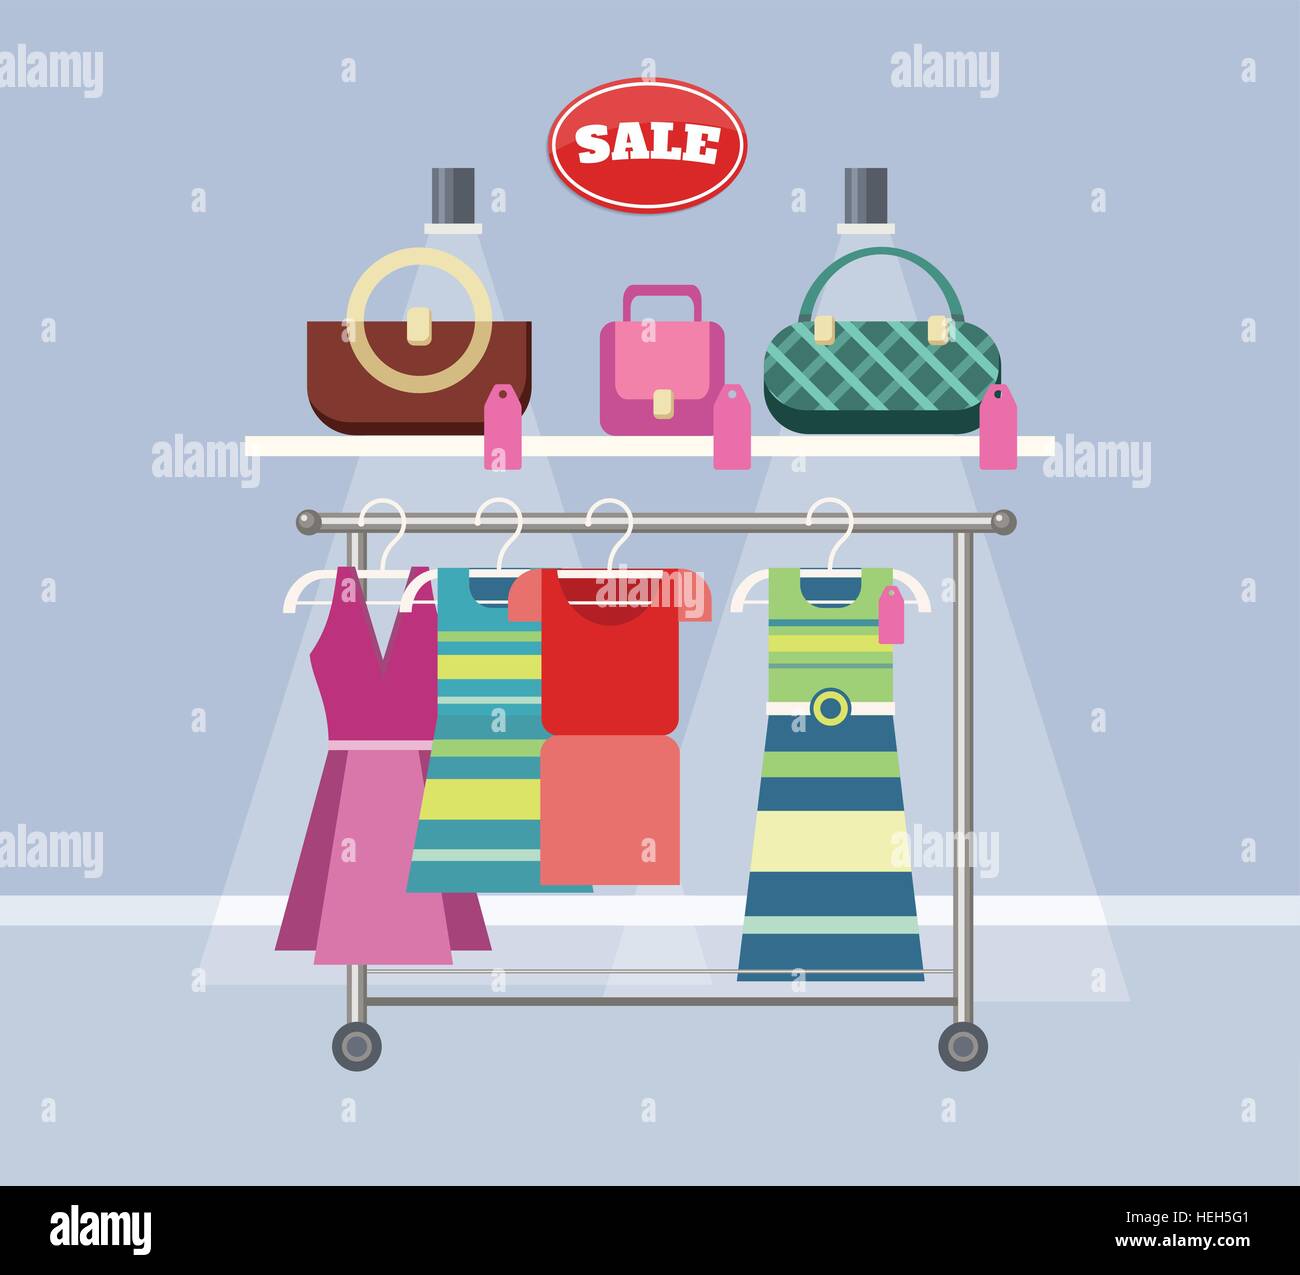 Verkauf Artikel Handtaschen und Kleidung. Verkauf, Einkauf, Marketing und  Verkauf Handtasche, Mode Kleidung Kleid, Boutique-Handtasche und  Stock-Vektorgrafik - Alamy